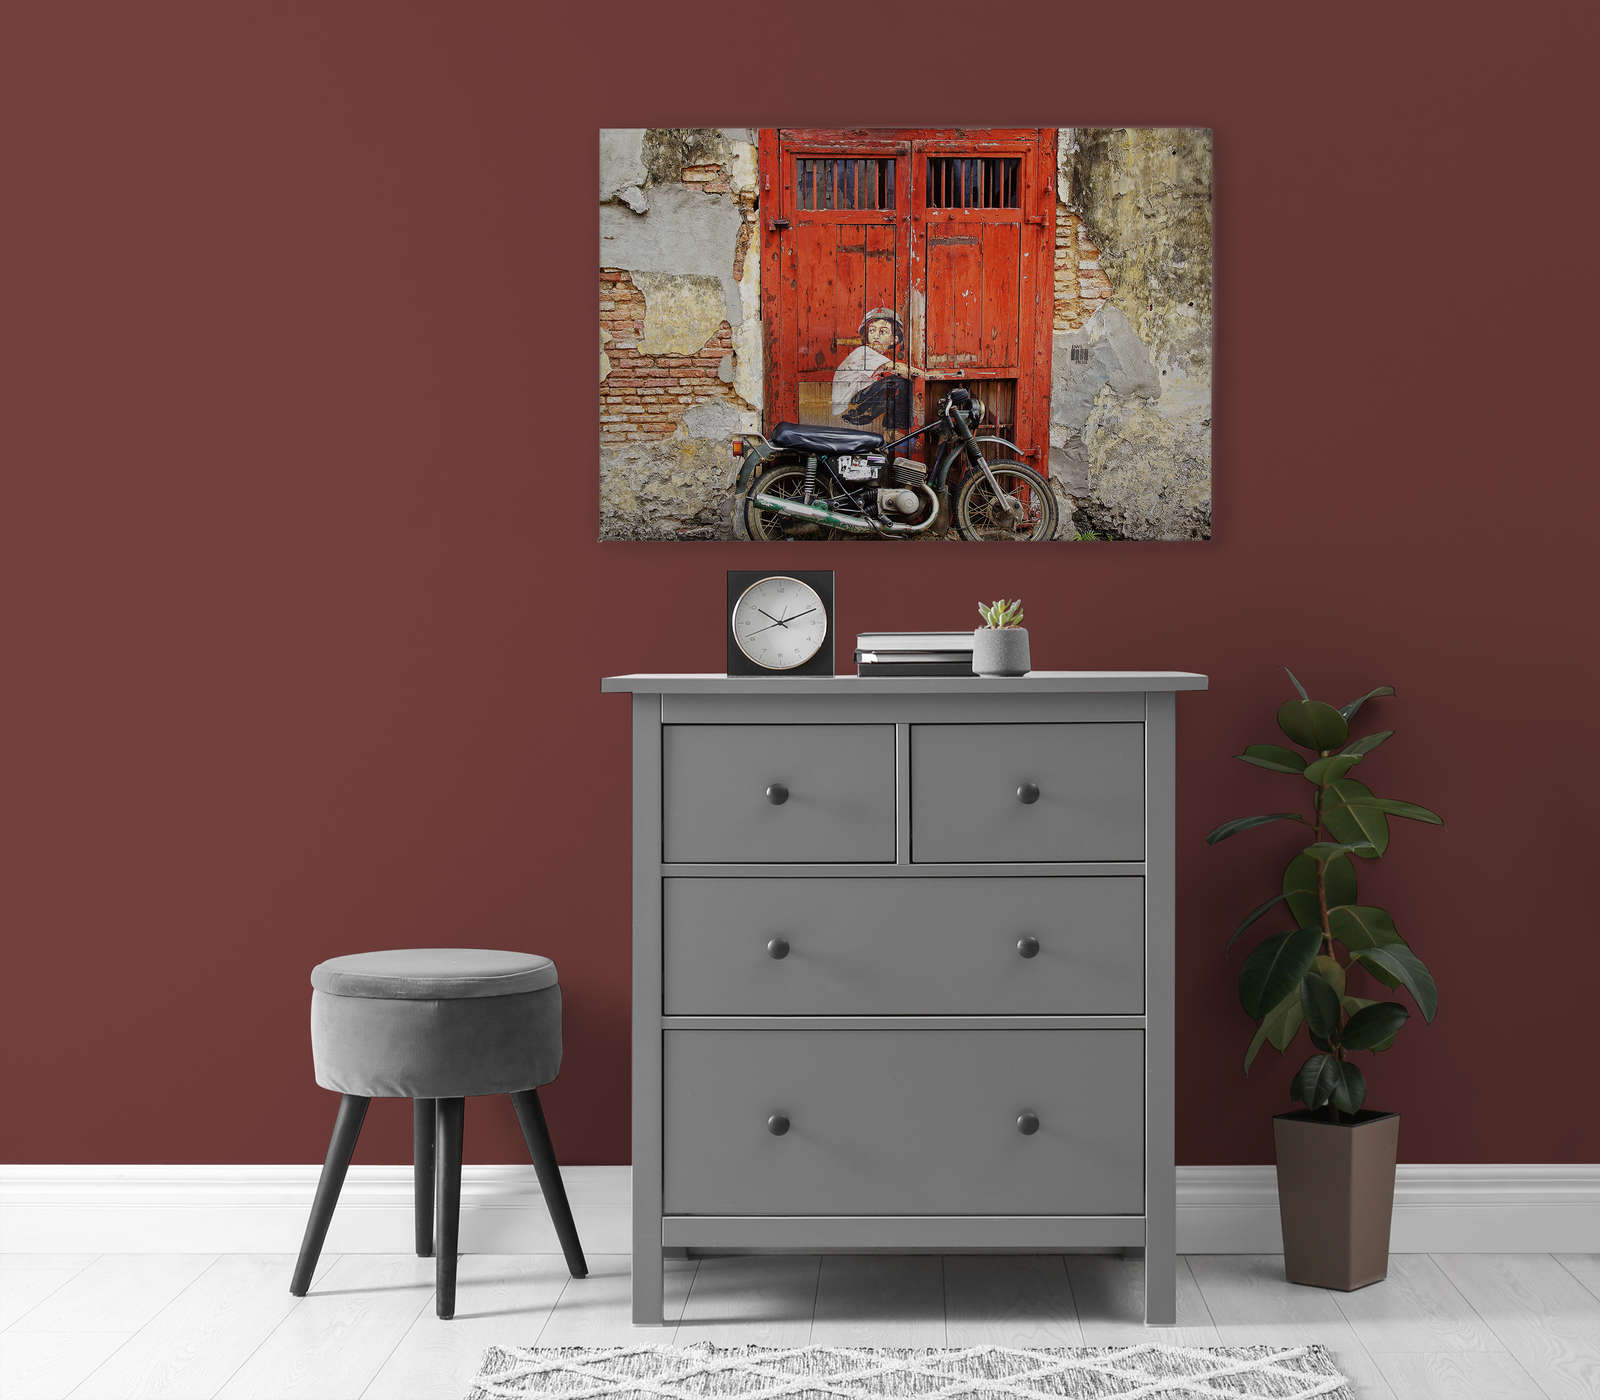             Tableau toile Porte vintage avec mur & moto - 0,90 m x 0,60 m
        